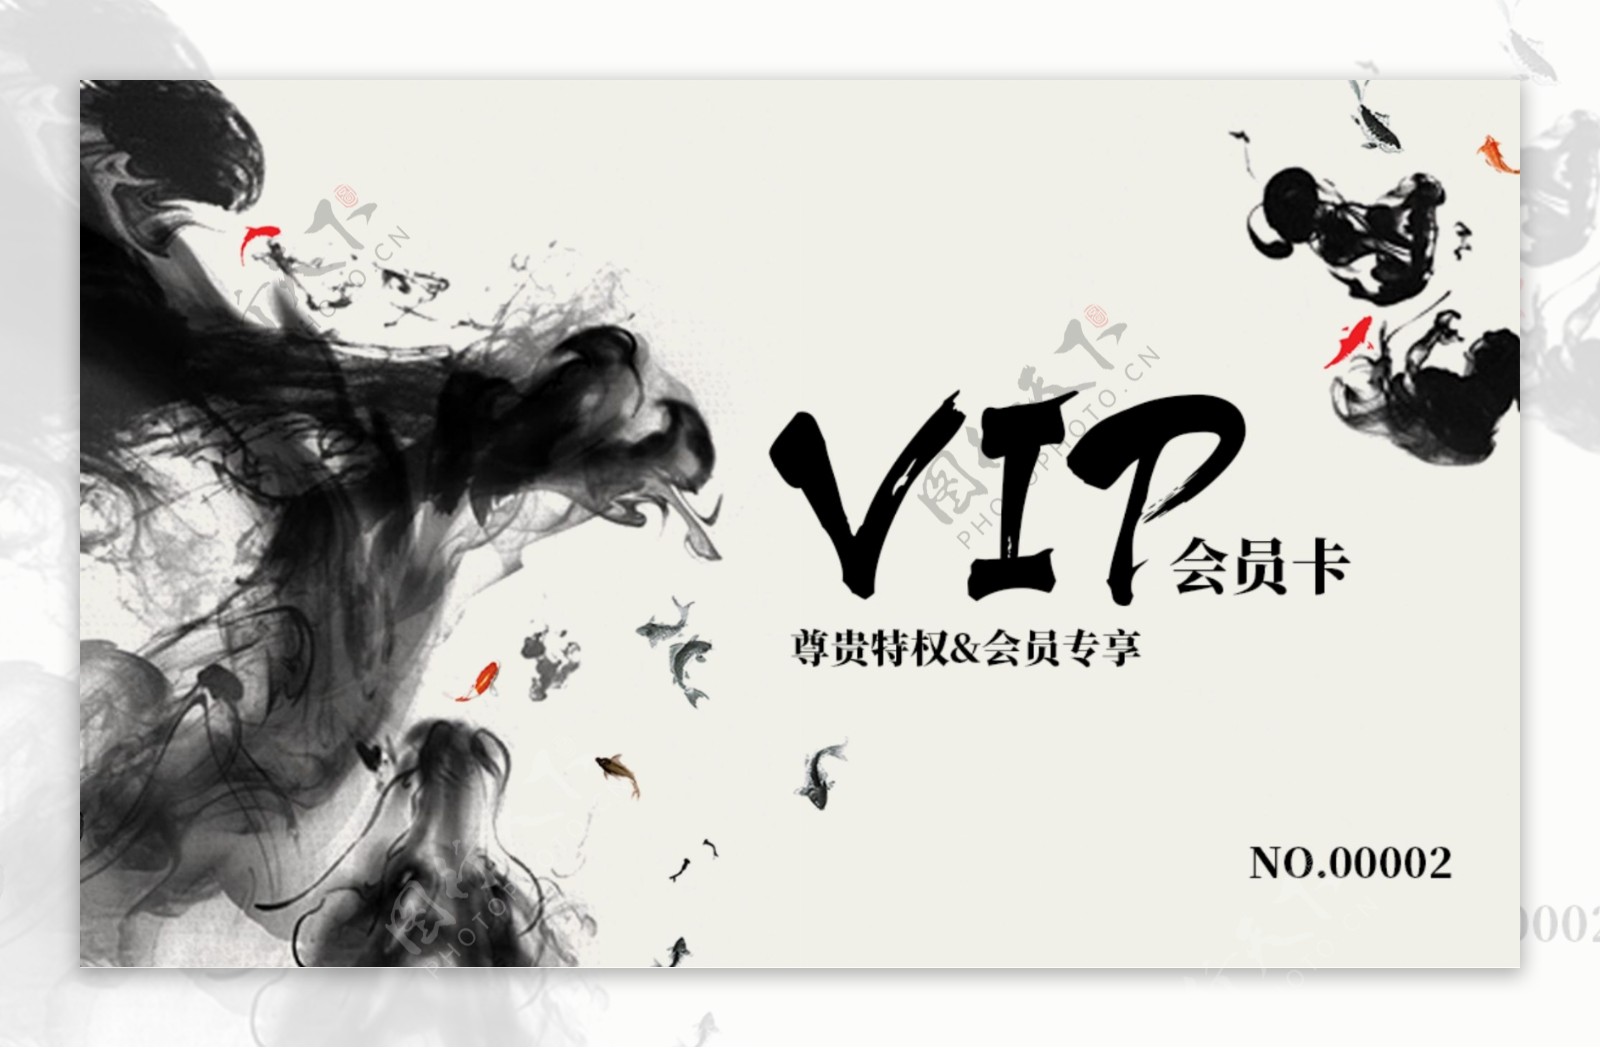 中国风VIP会员卡模板